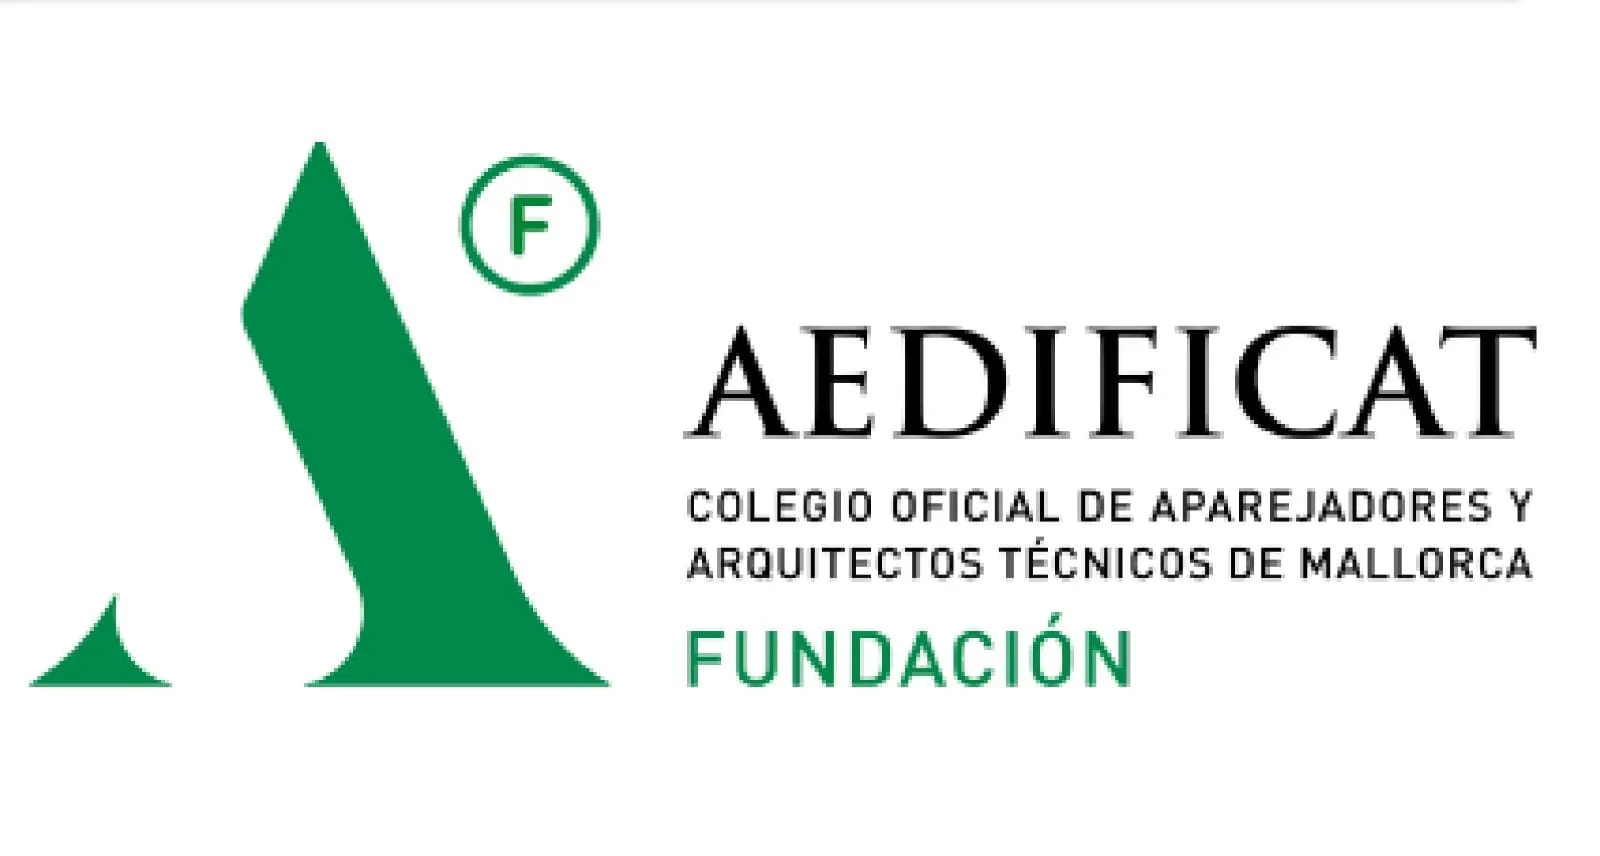 Fundació AEDIFICAT